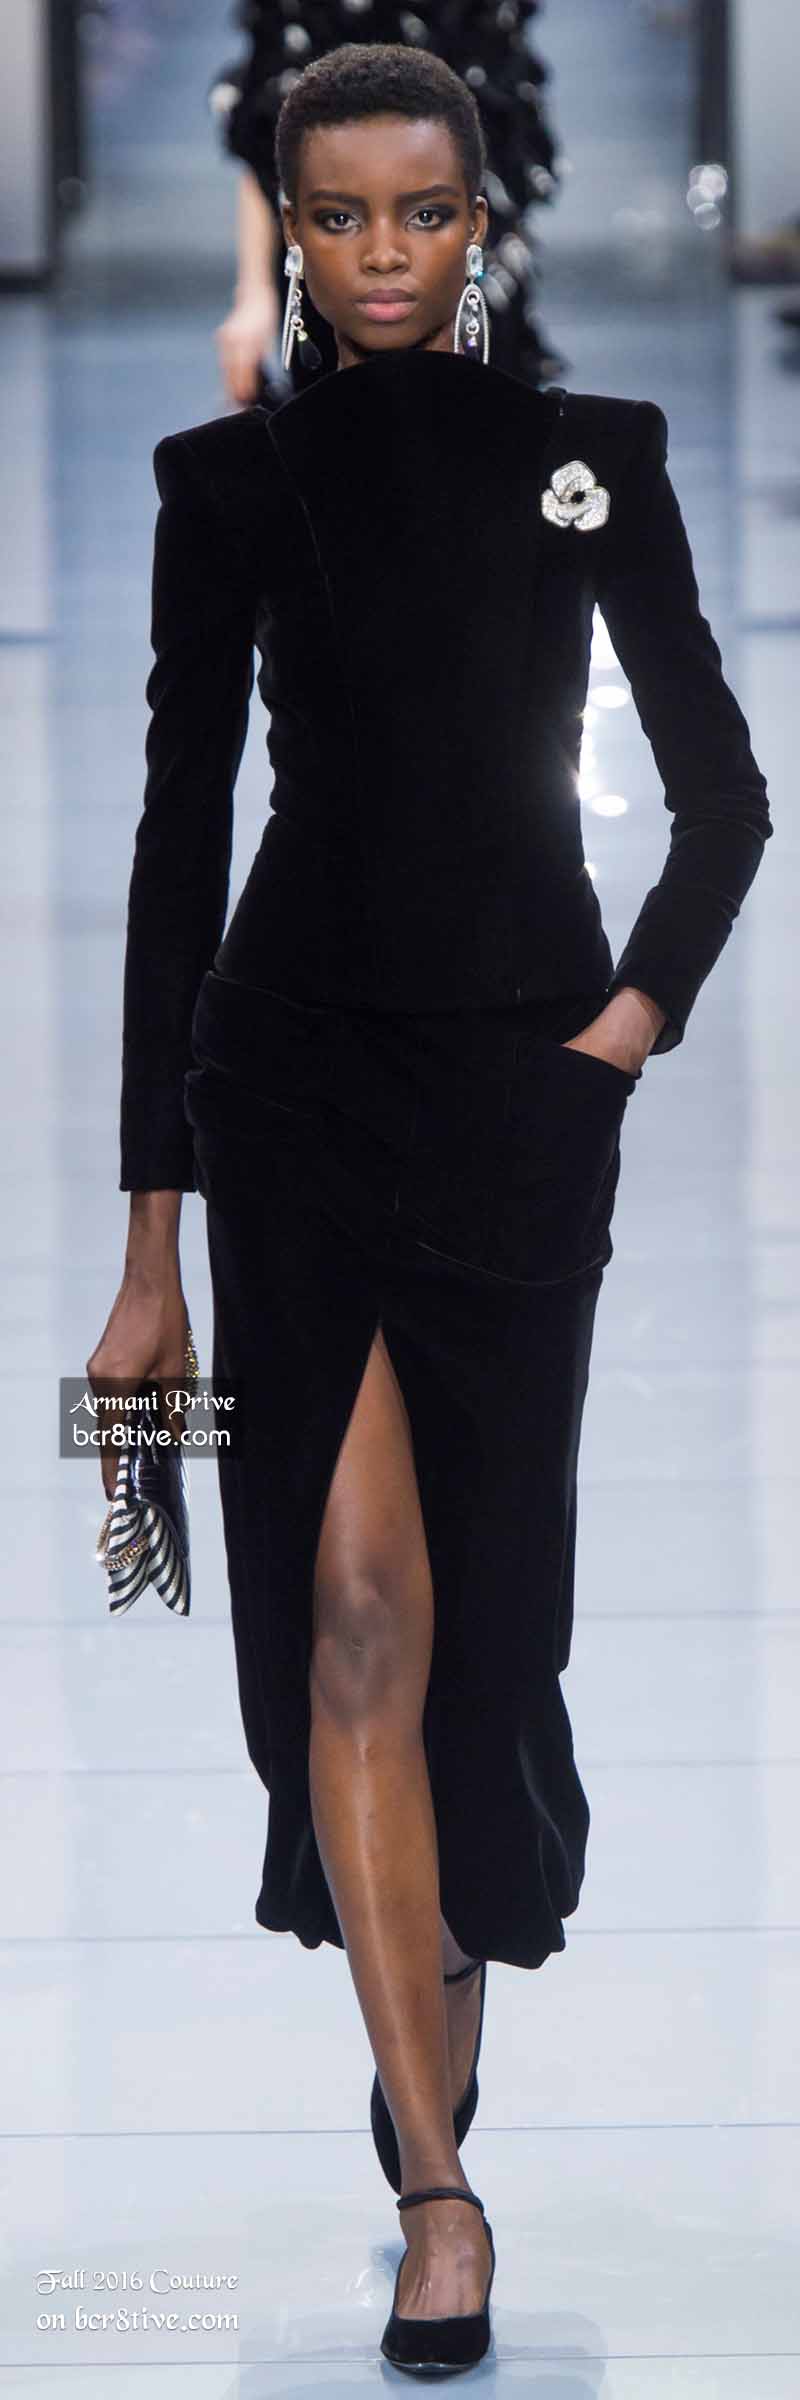 Giorgio Armani Privé - The Best Fall 2016 Haute Couture Fashion